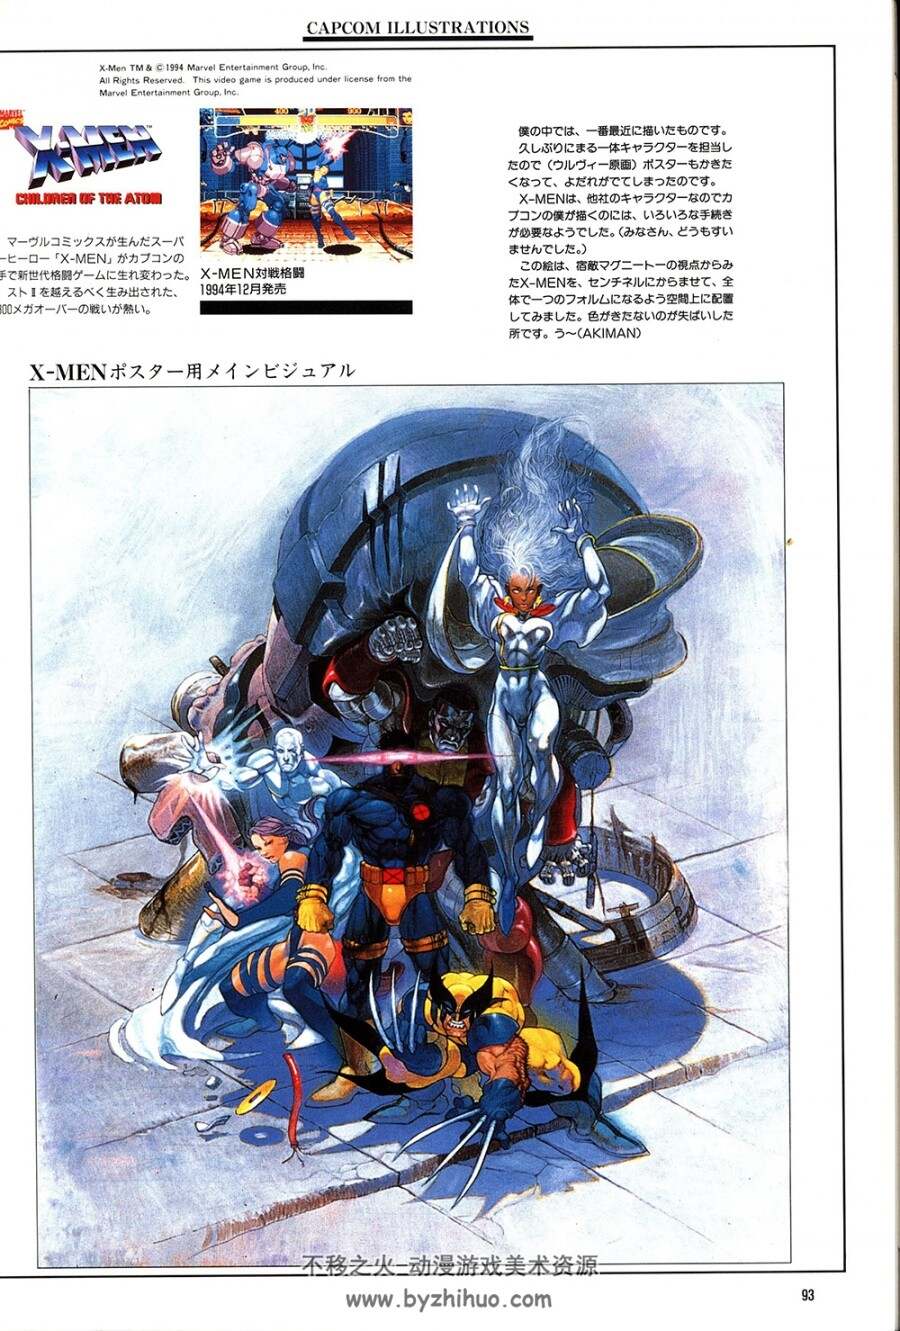 卡普空Capcom Illustrations カブコンイラスト作品集Gamest Mook vol.17/165P/215M.jpg